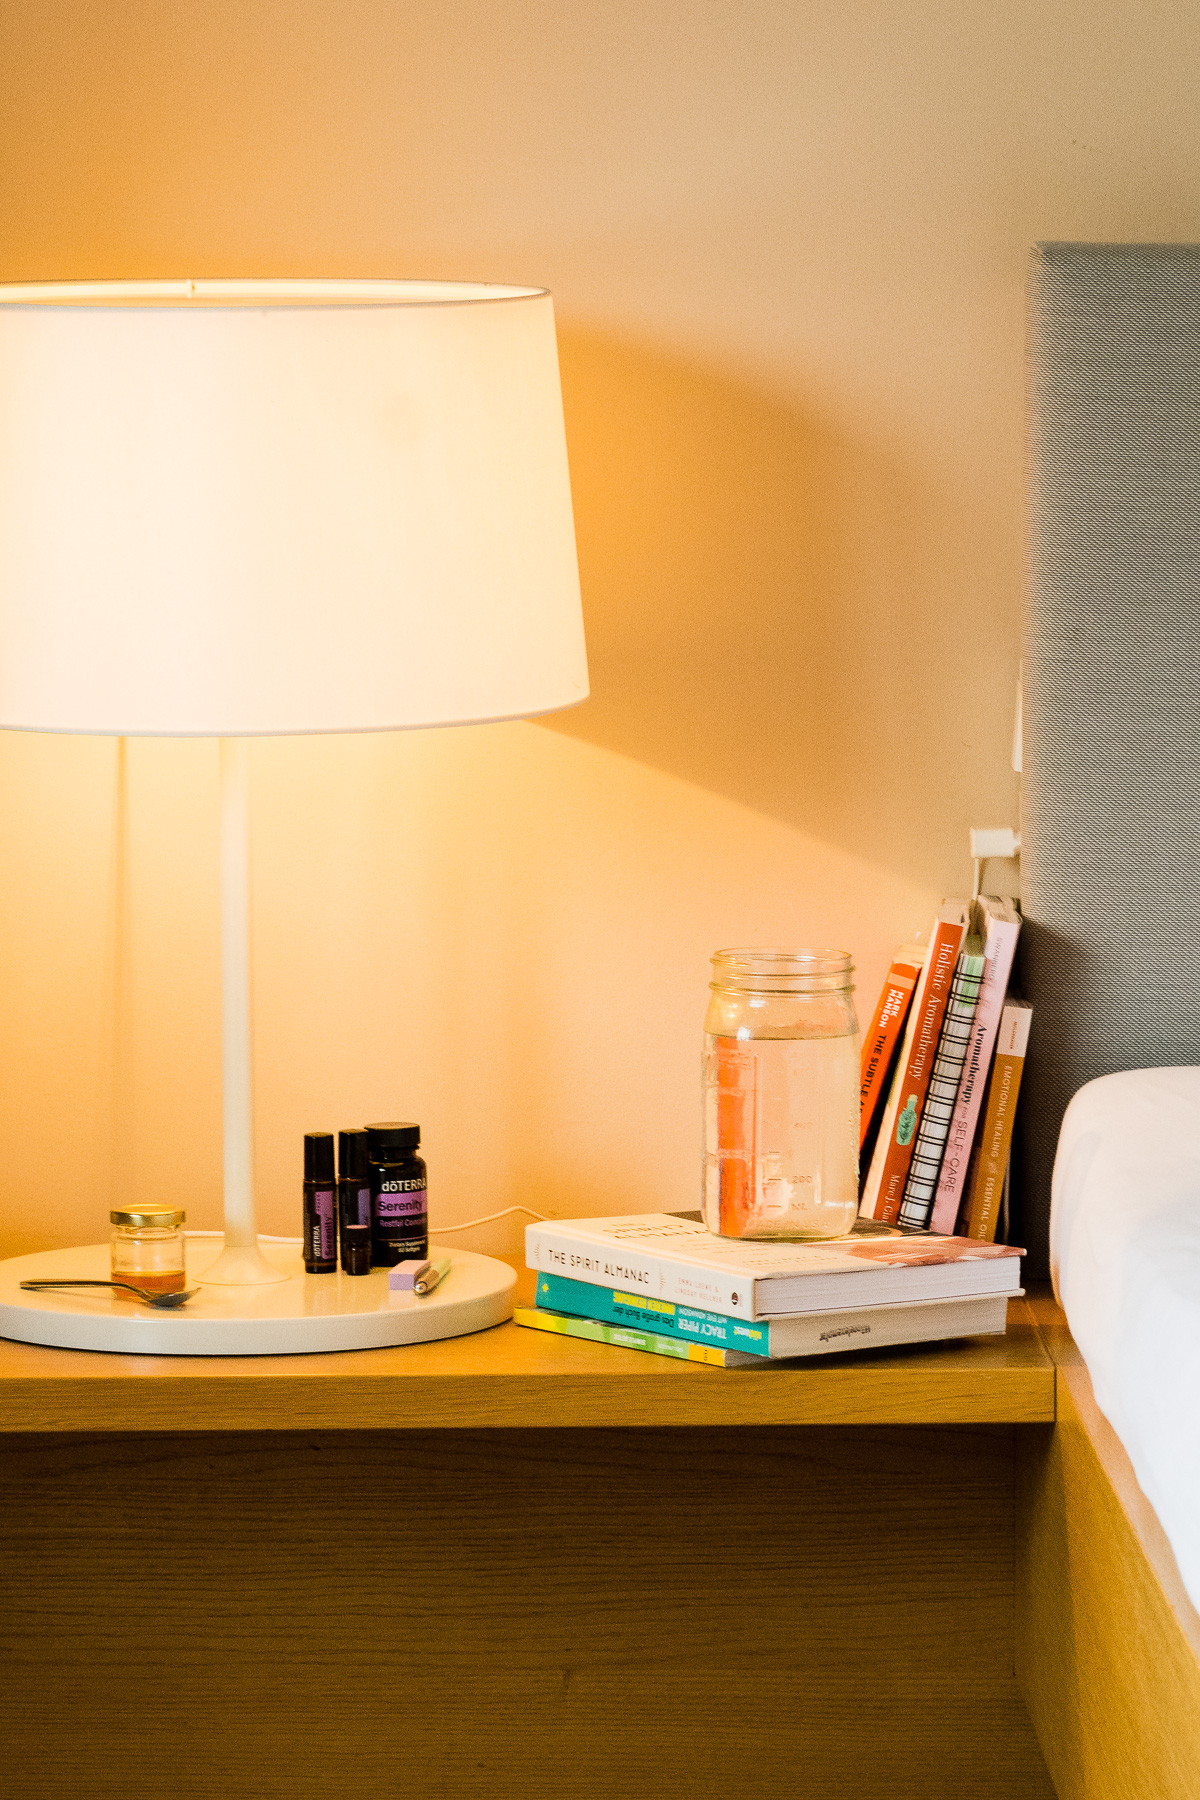 Tisch neben einem Bett mit einer Lampe, Büchern und einem Glas Wasser.